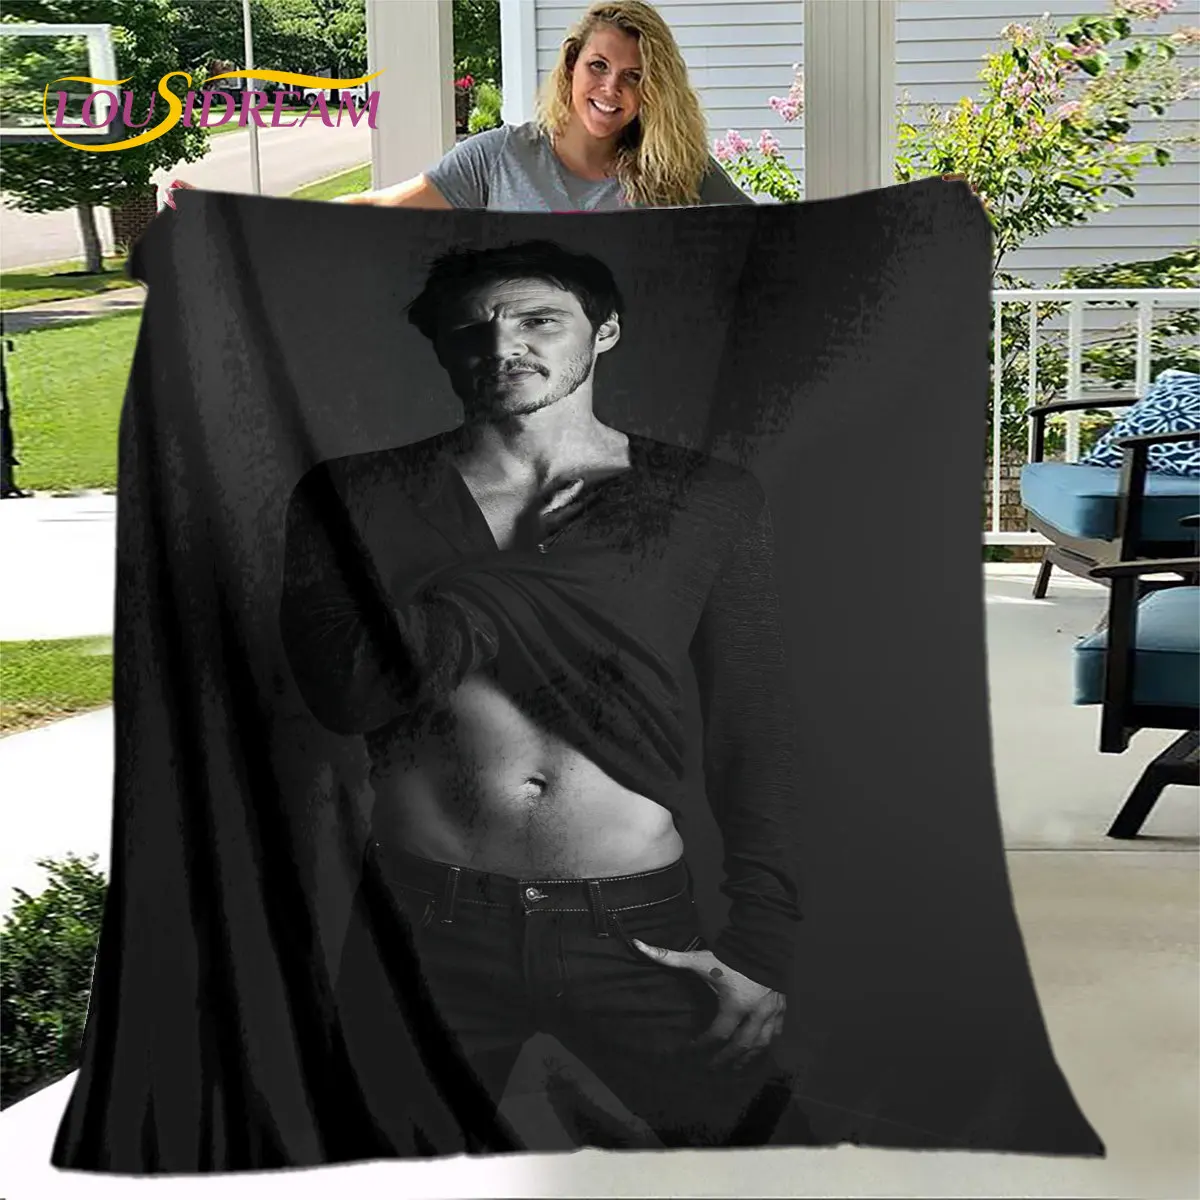 

Мягкое плюшевое одеяло с фото Хосе Педро балмаеда Паскаль, фланелевое одеяло, покрывало для гостиной, спальни, кровати, дивана, покрывало для пикника